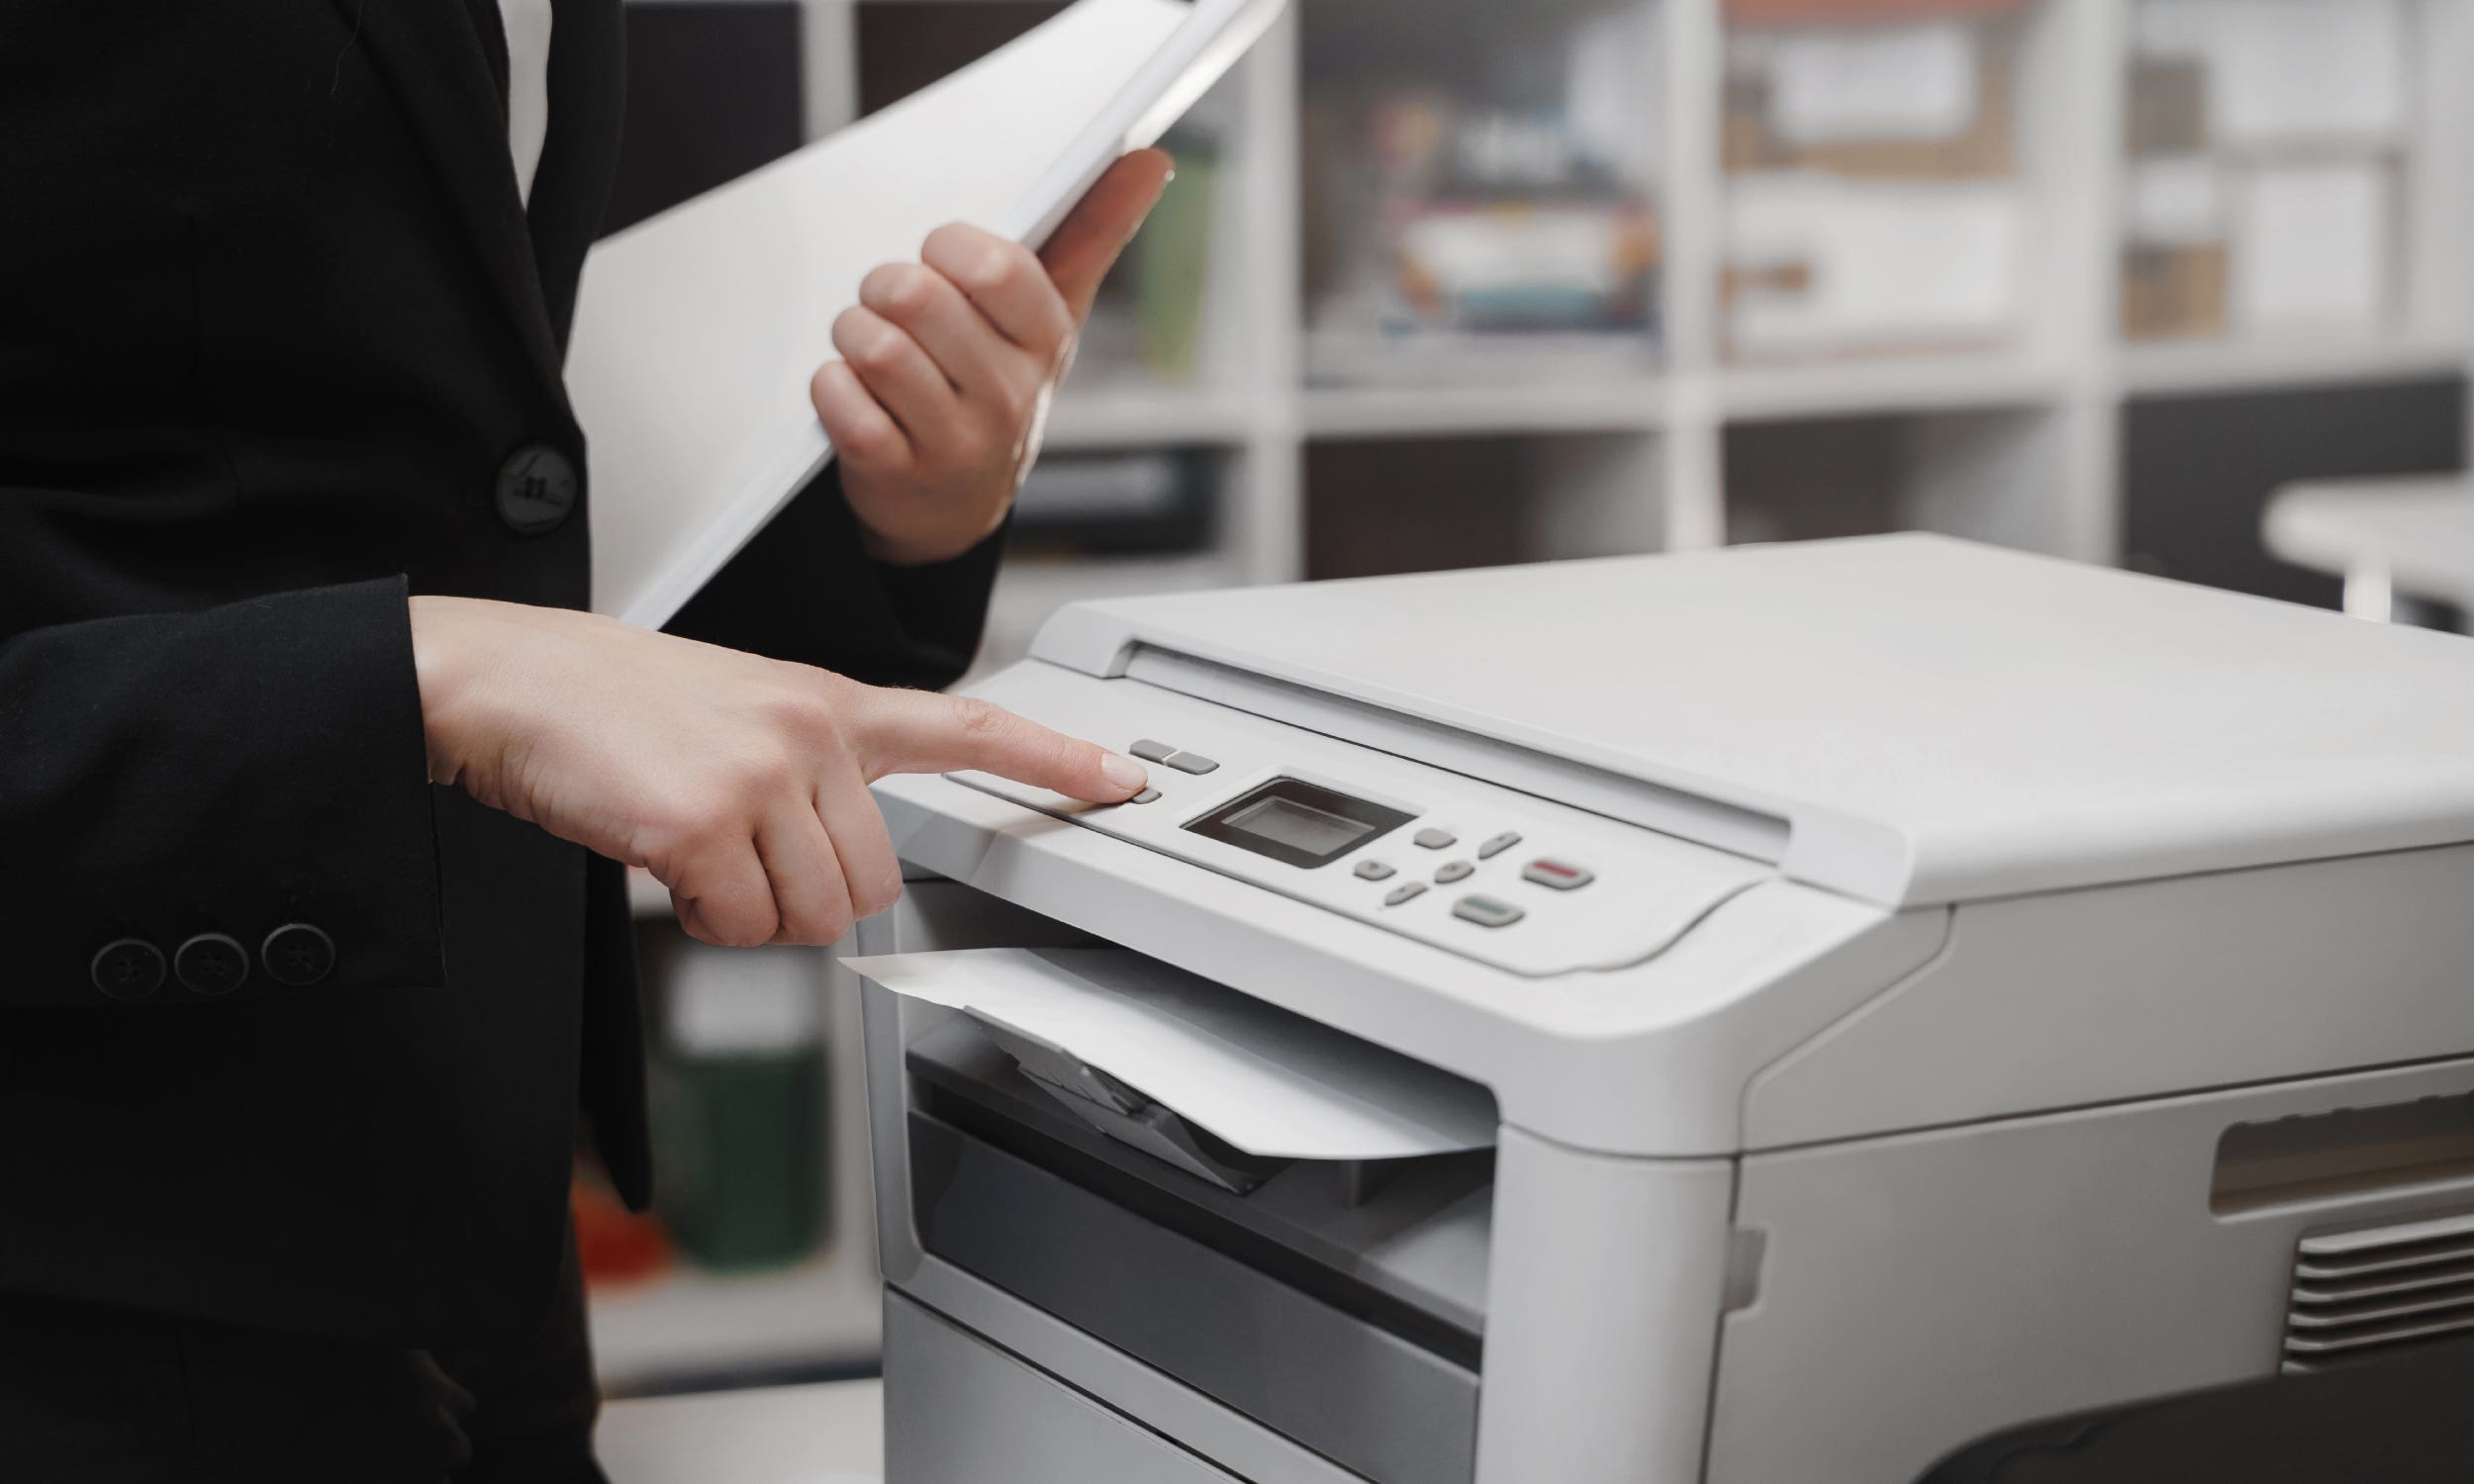 person using a printer